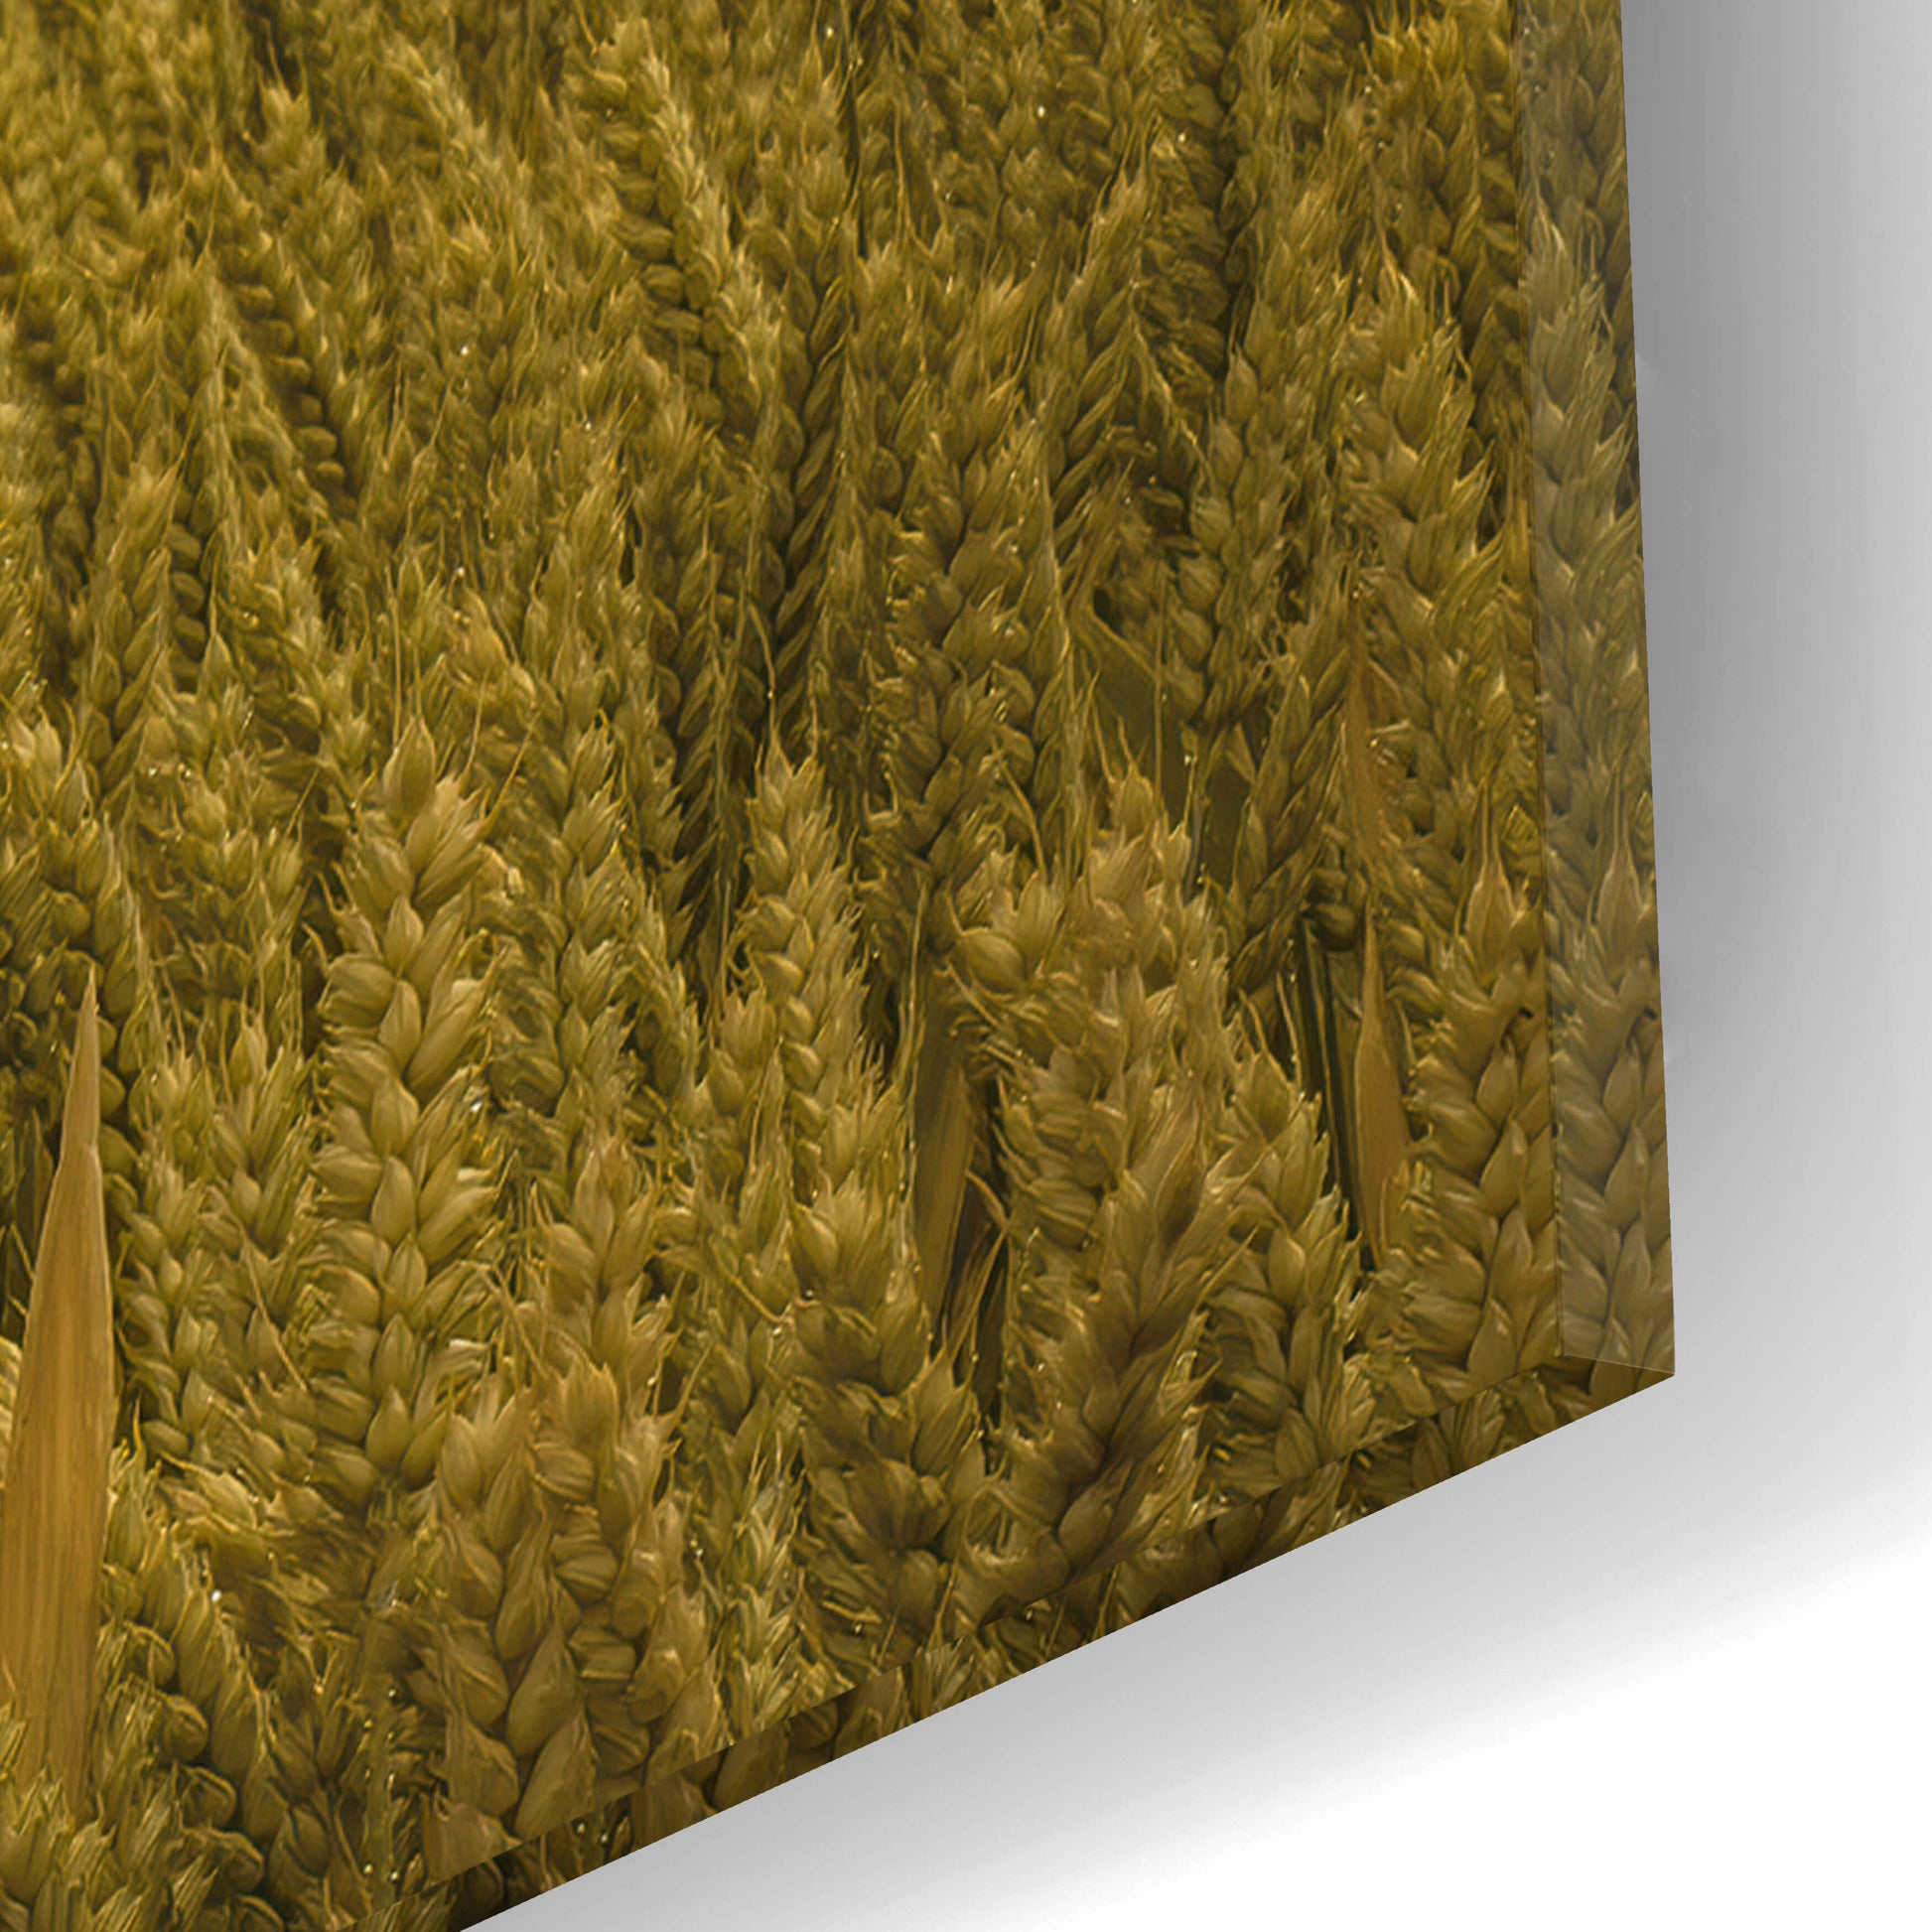 Epic Art  'Across The Wheat Field'  by Don Schwartz, Acrylic Glass Wall Art,12x16